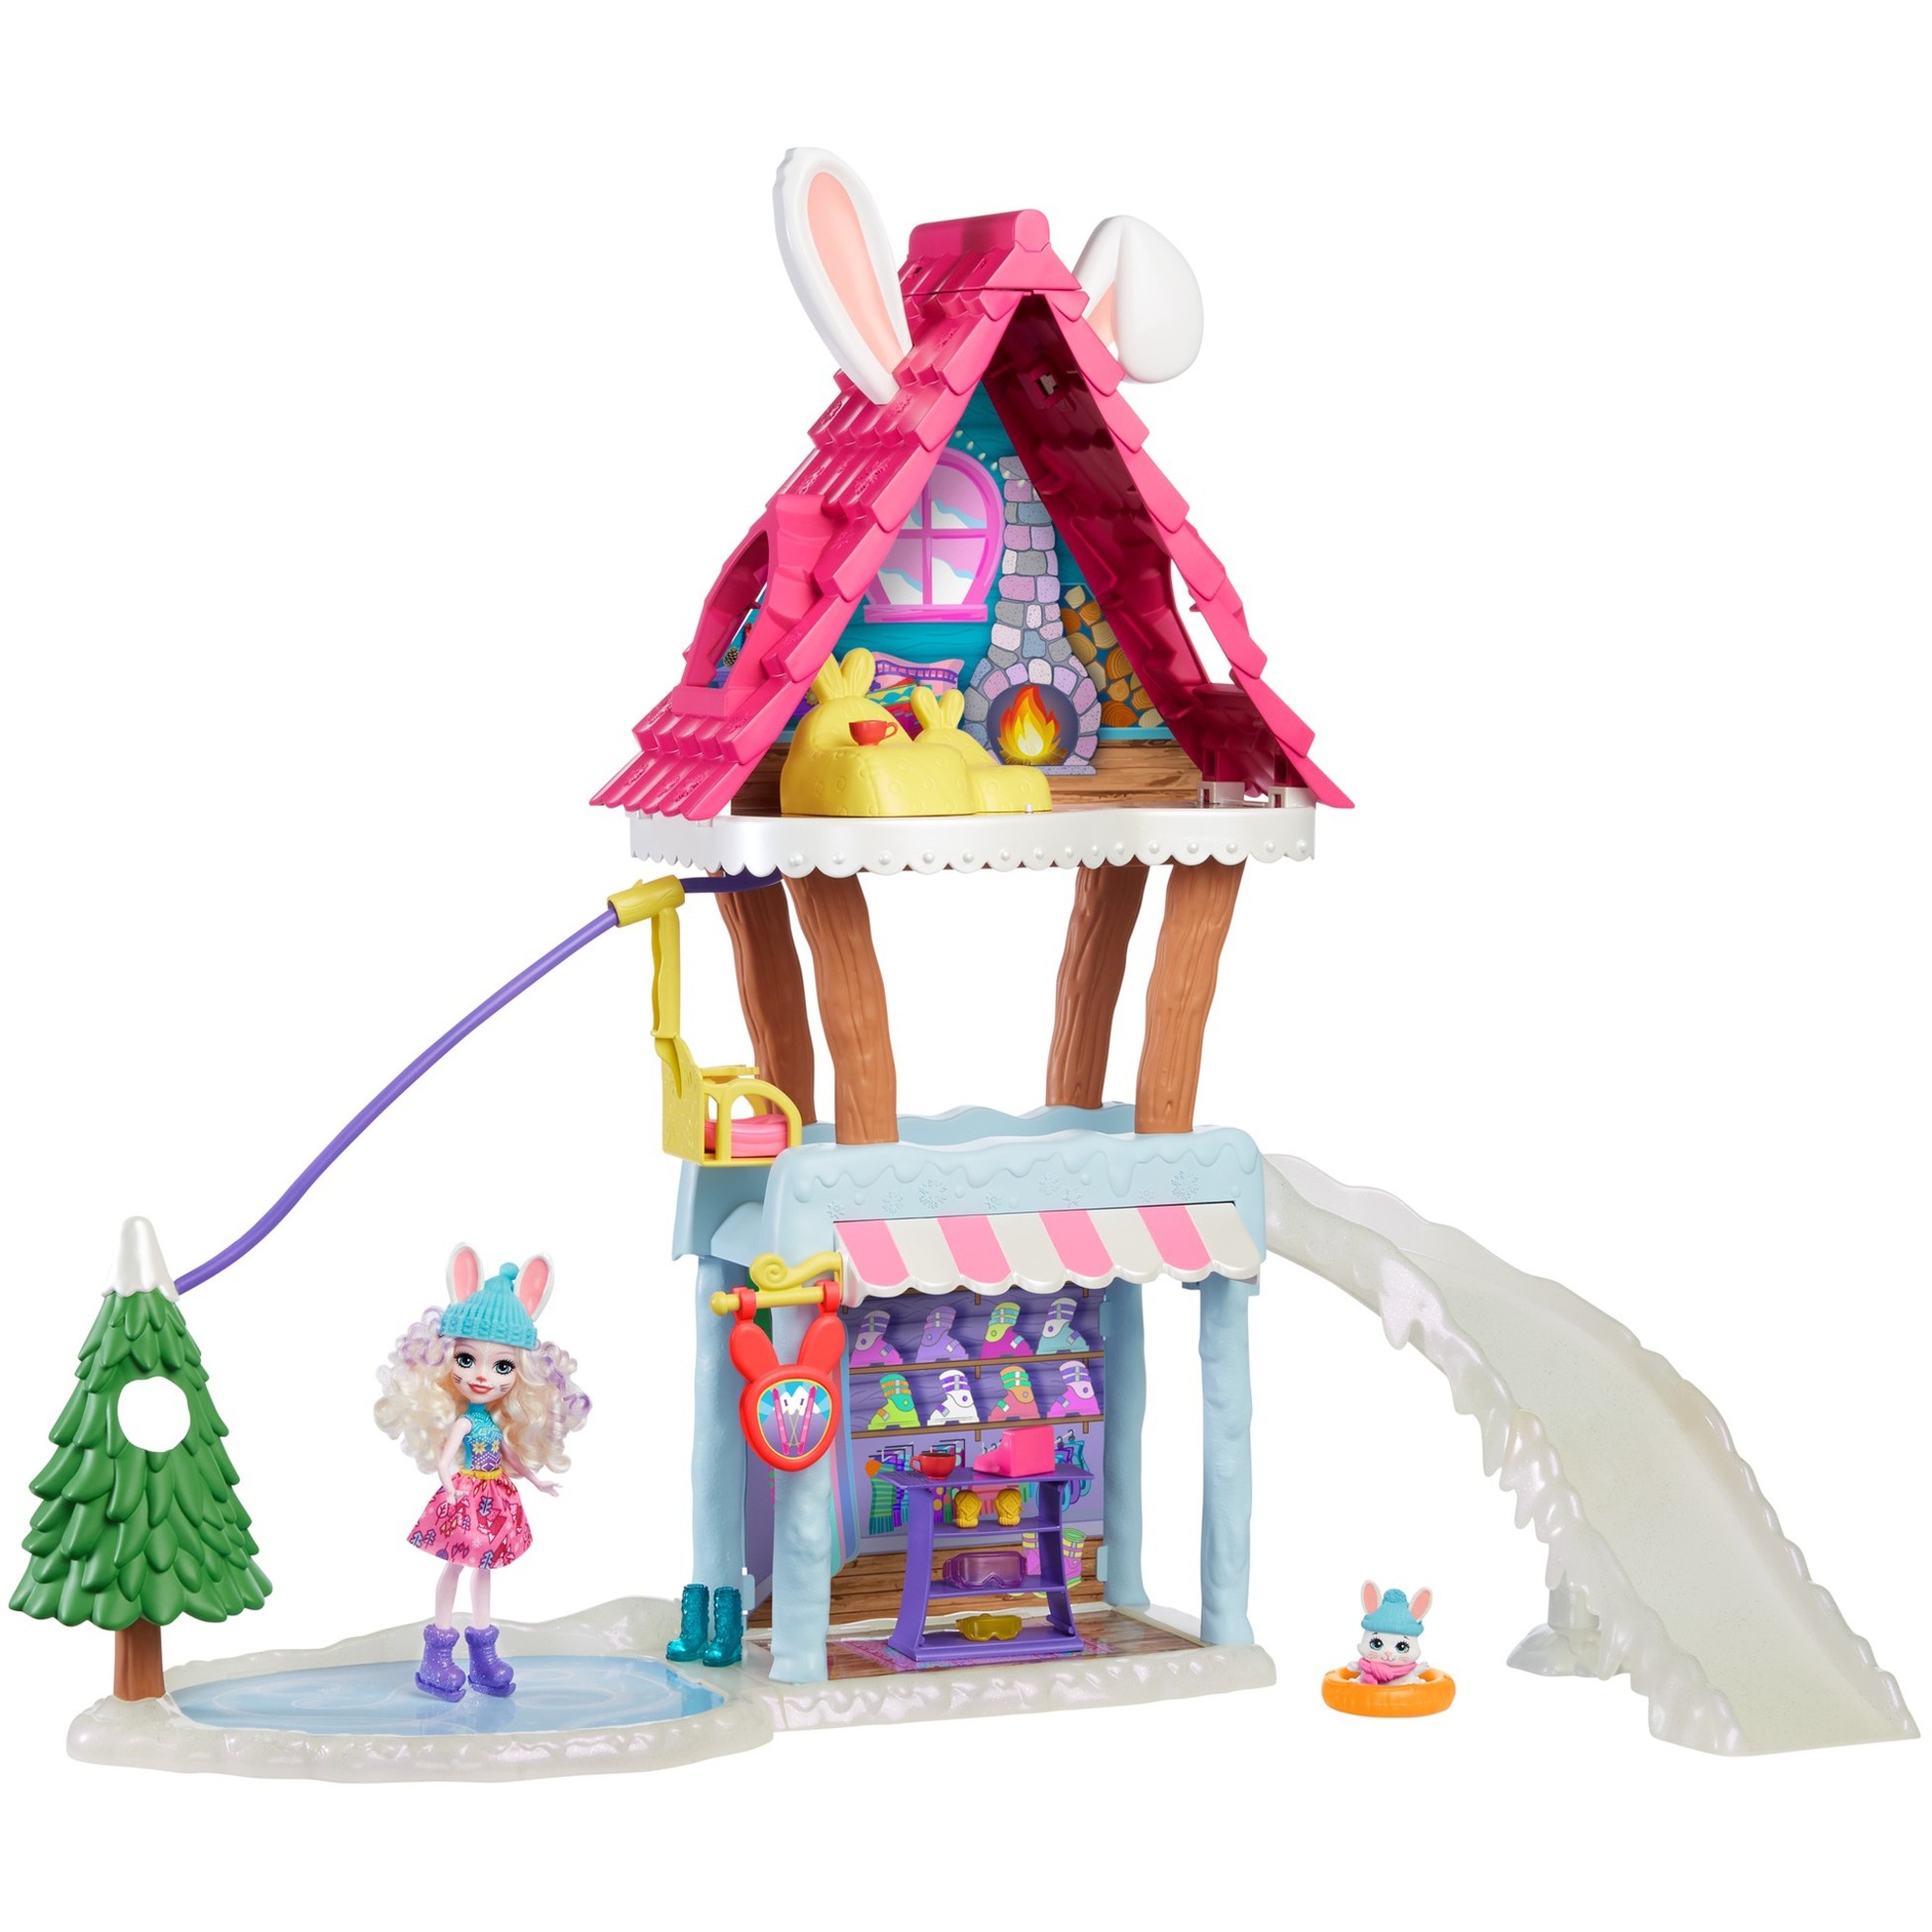 Image of Alternate - Hasen-Skihütte mit Bevy Bunny & Jump, Puppe online einkaufen bei Alternate